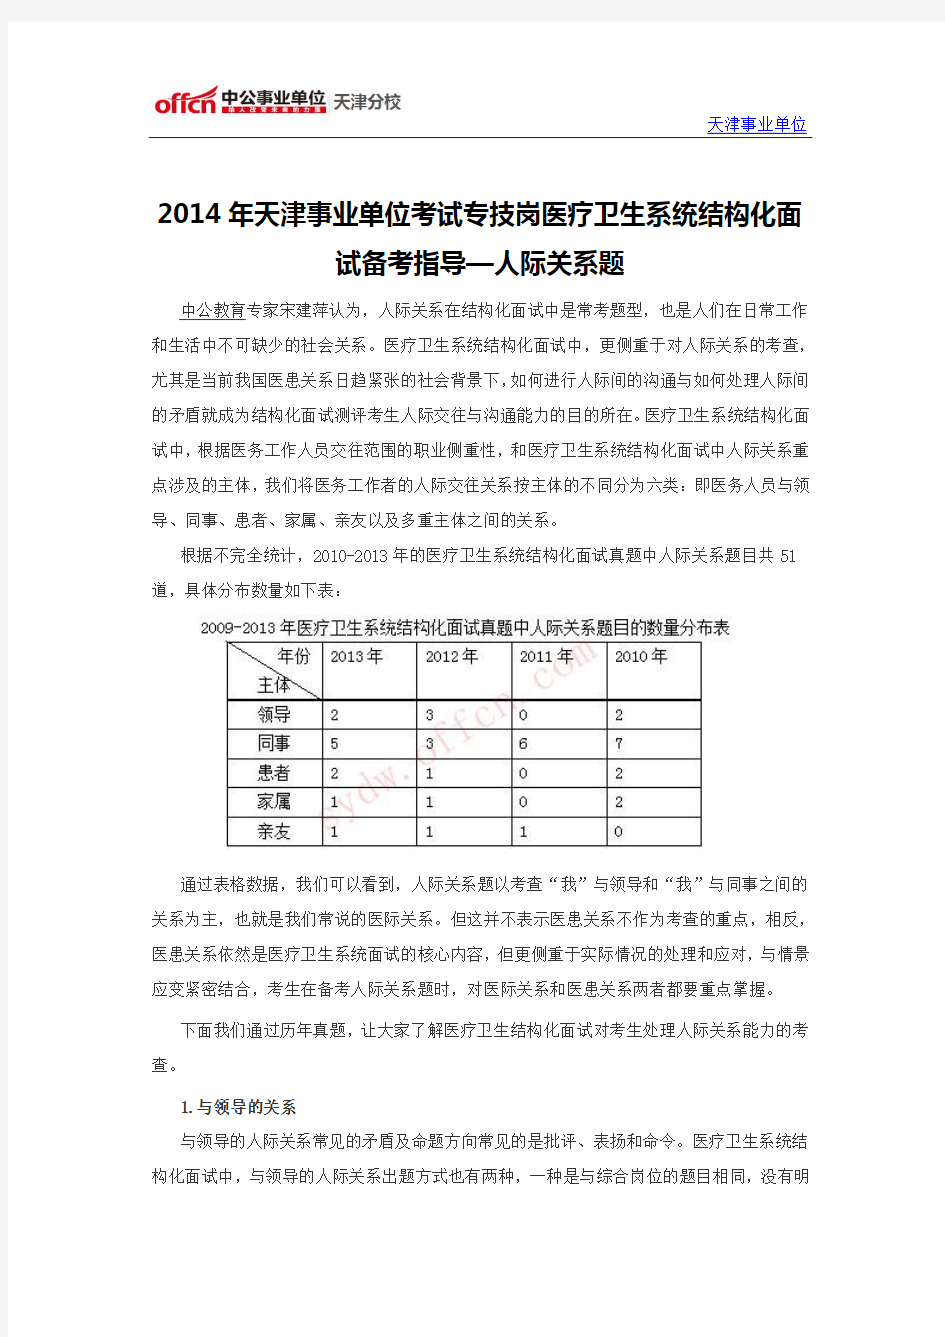 2014年天津事业单位考试专技岗医疗卫生系统结构化面试备考指导—人际关系题